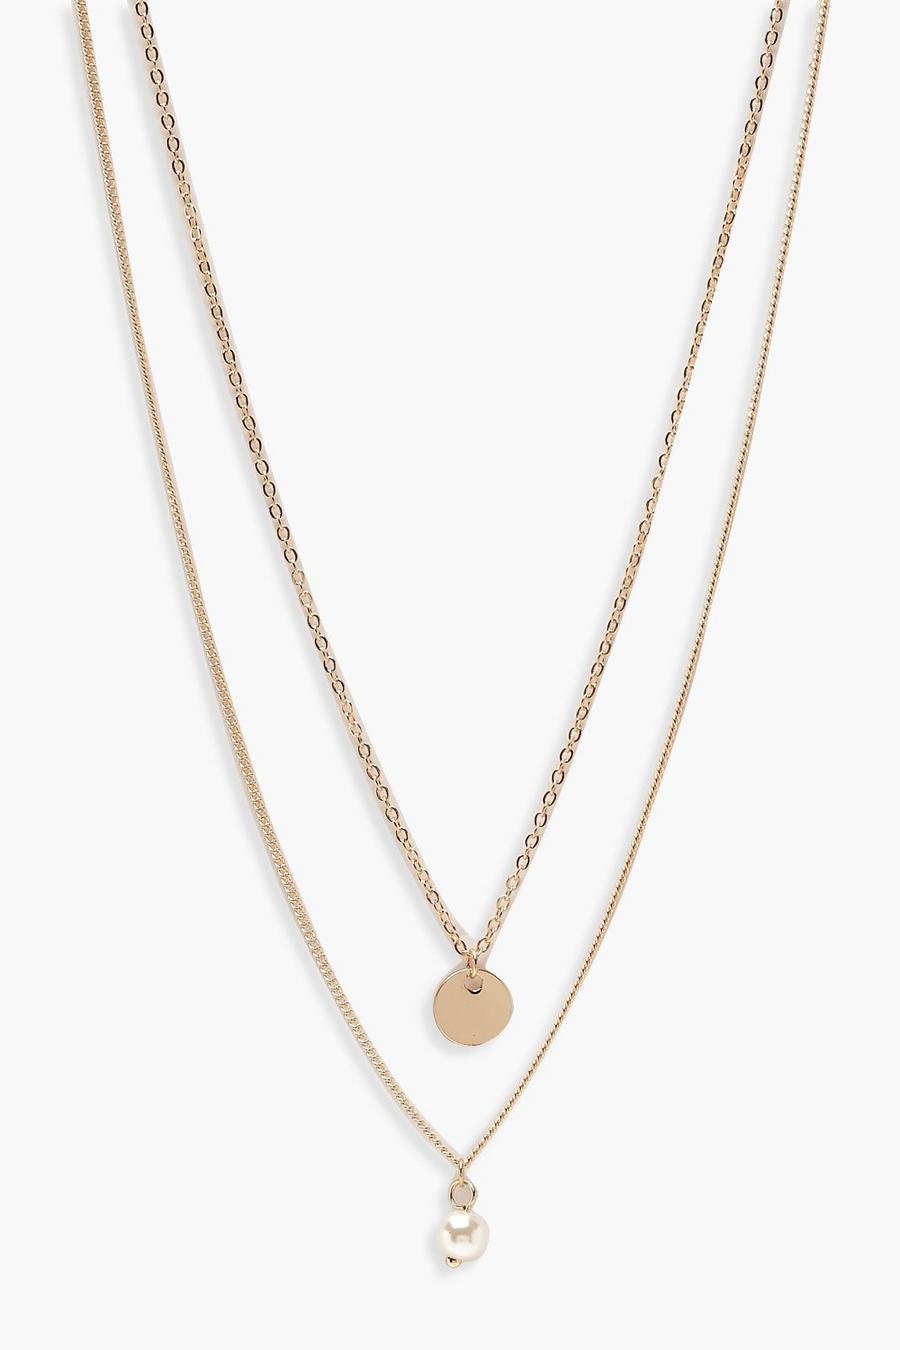 Collier doré à chaîne double avec pendentif pièce et fausse perle, Or metallic